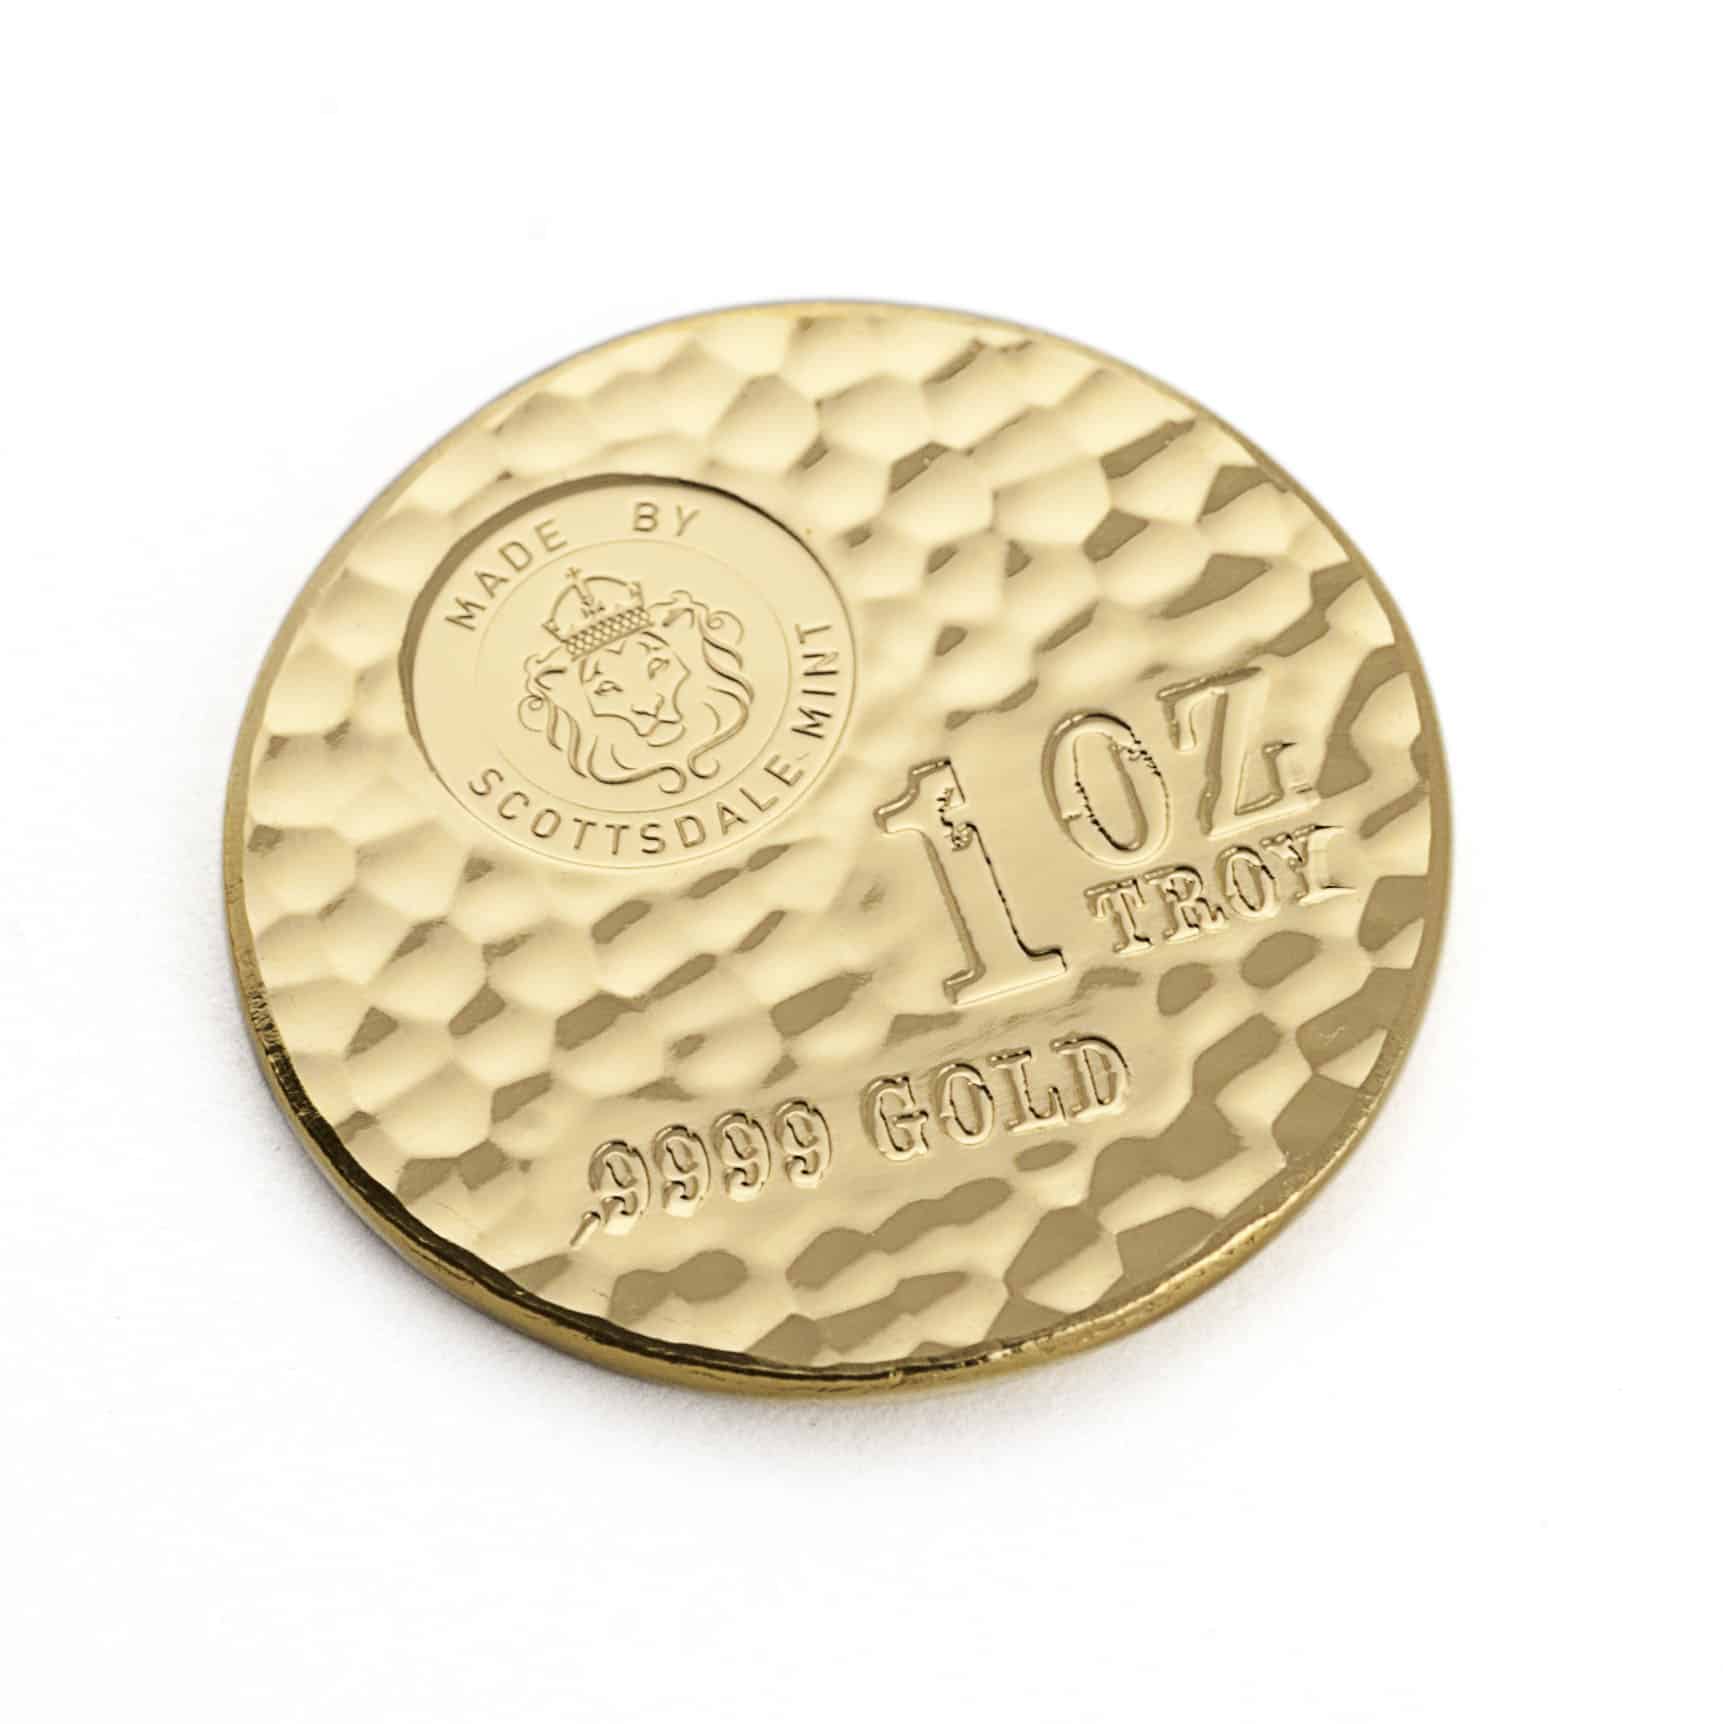 1 oz Hammerslået Tombstone Guldmønt fra Scottsdale Mint Arizona USA - Vitus Guld Danmarks Førende Guldhandler